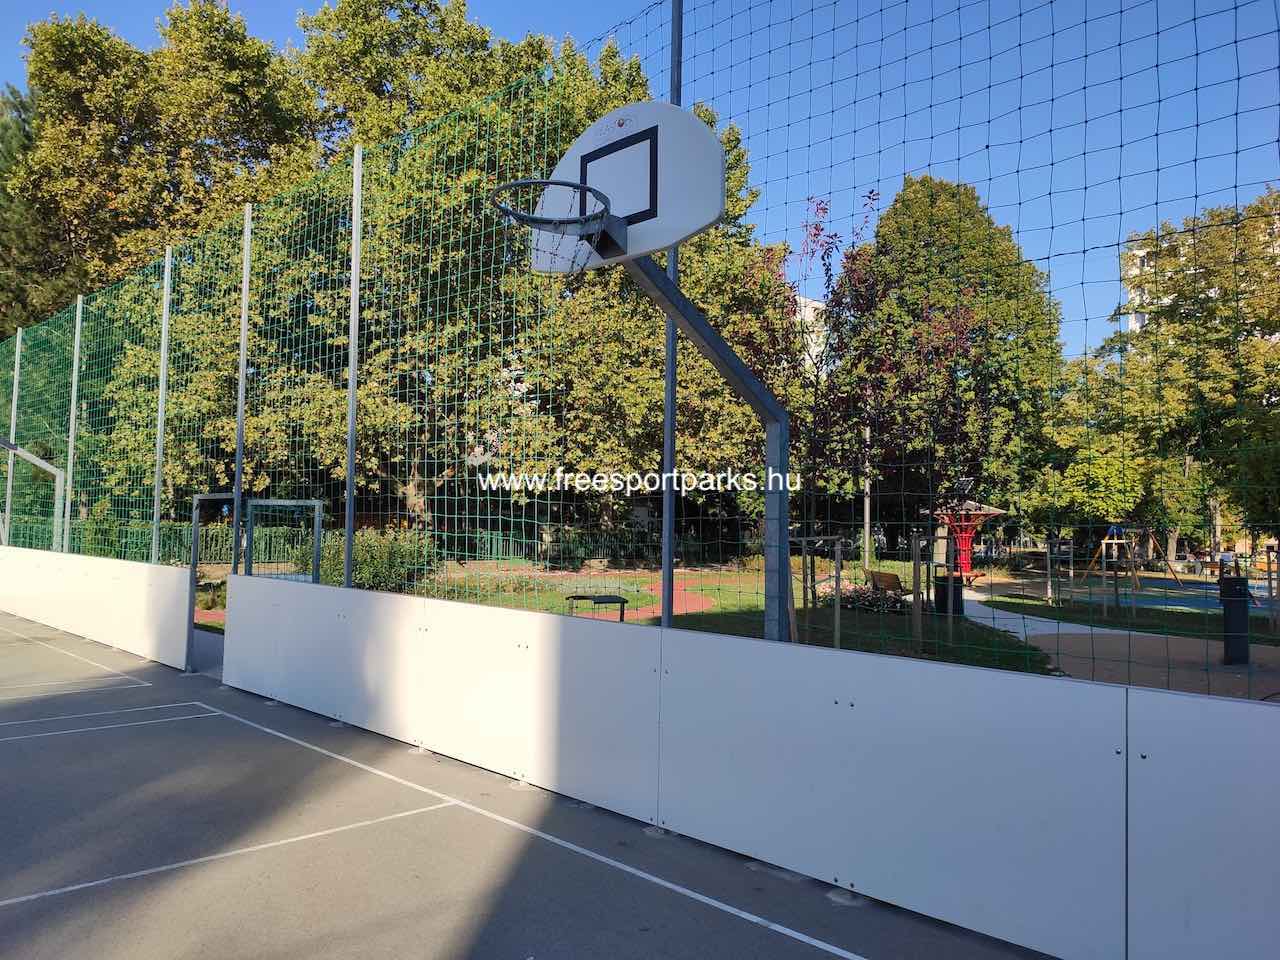 kosárlabda palánk - Say Ferenc utcai park, Siófok - Free Sport Parks blog